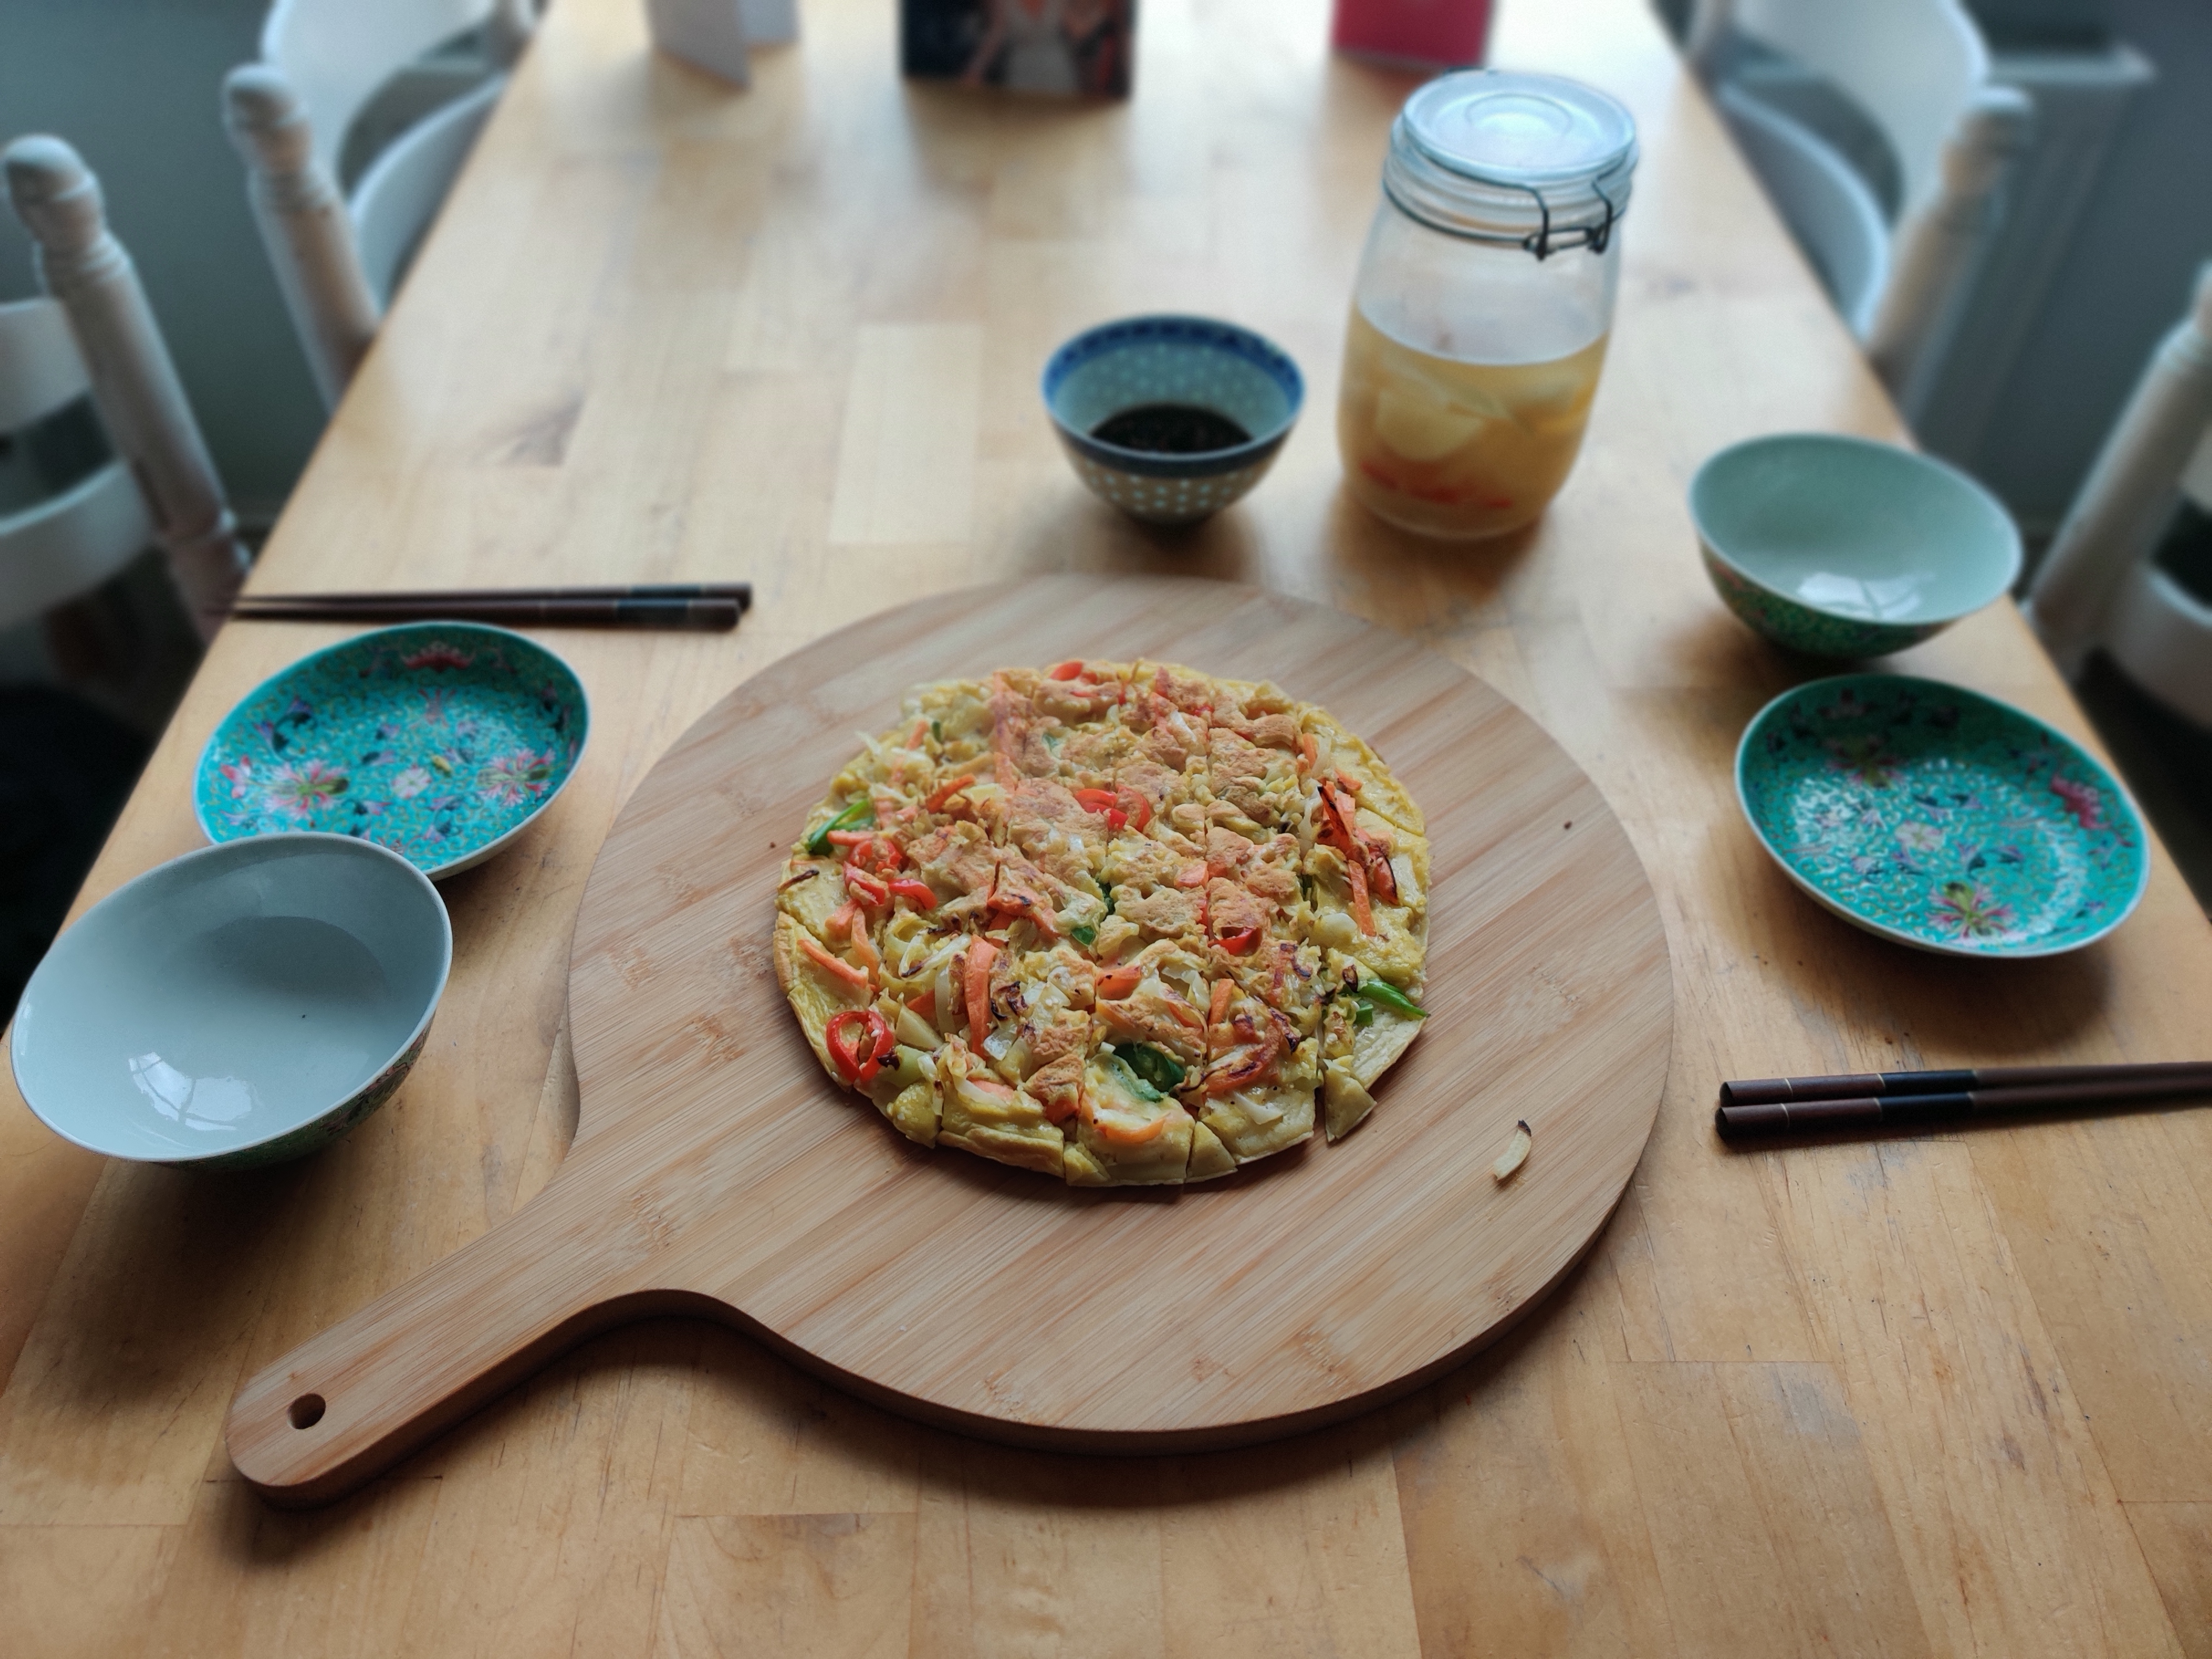 Pa Jeon (Korean Pancake) served with water radish kimchi